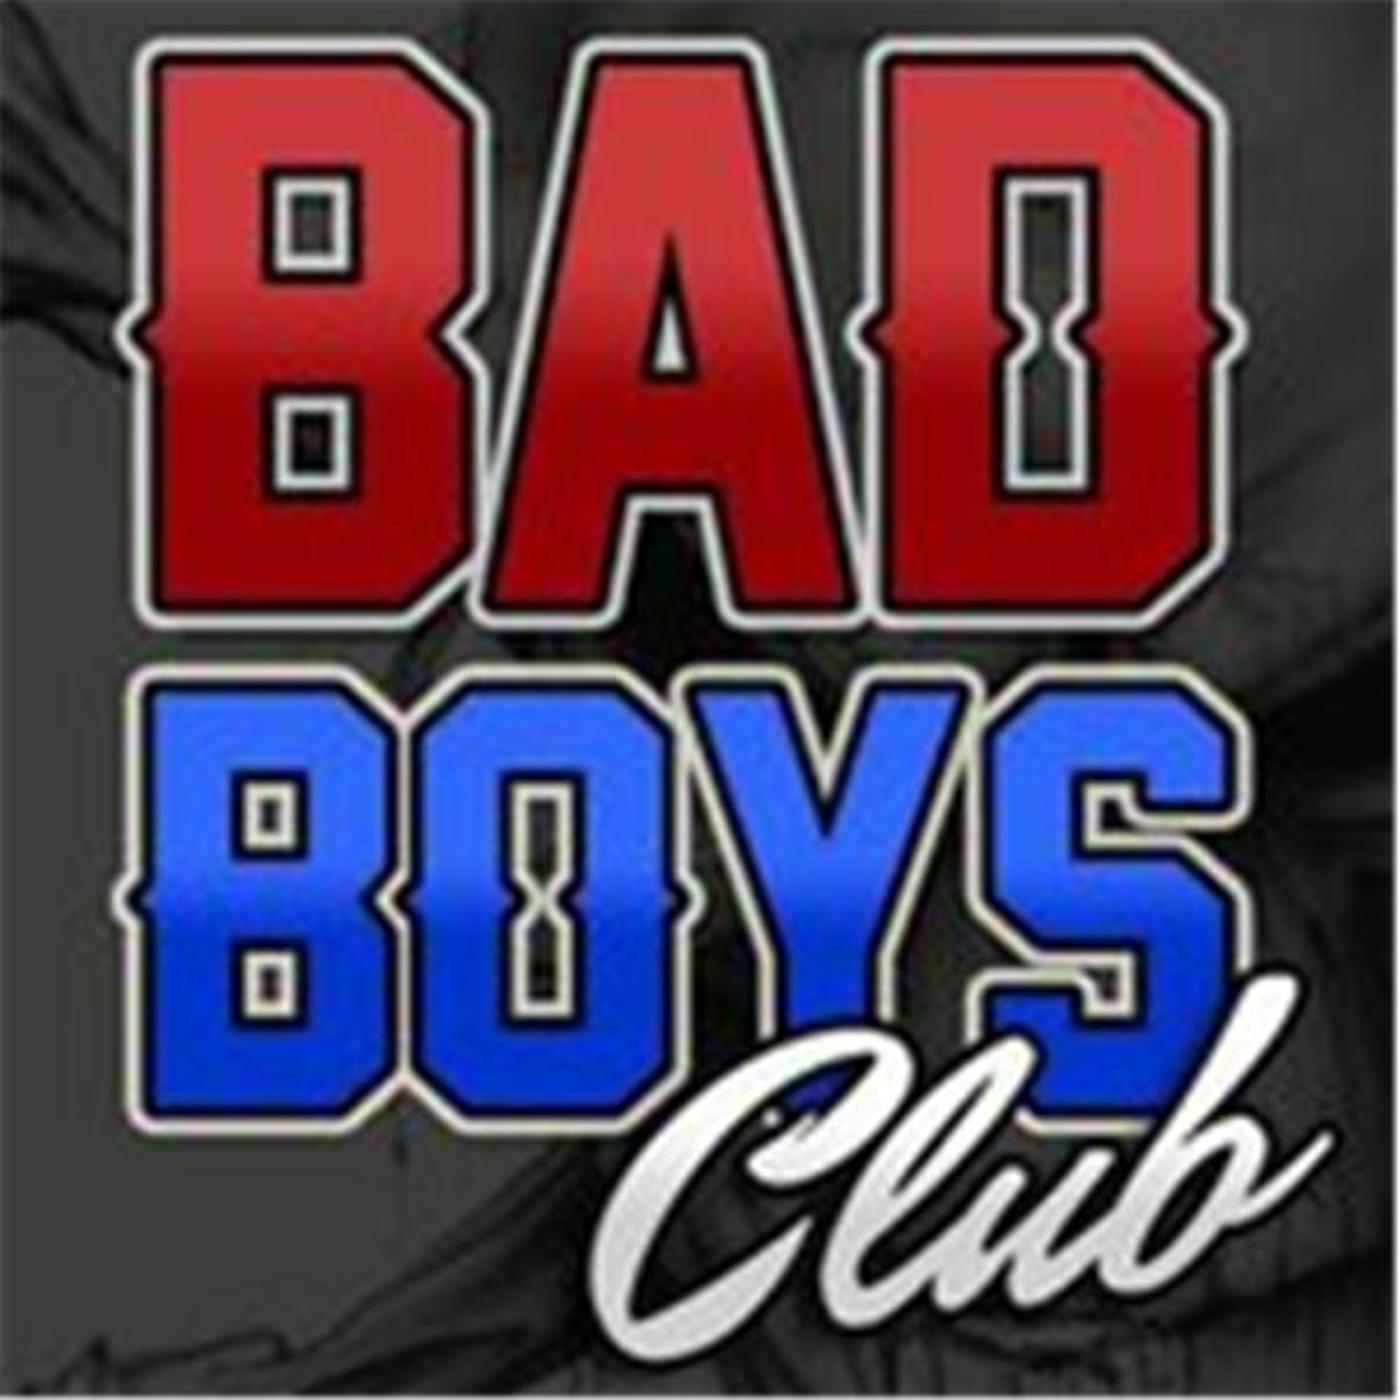 The bad boyz club